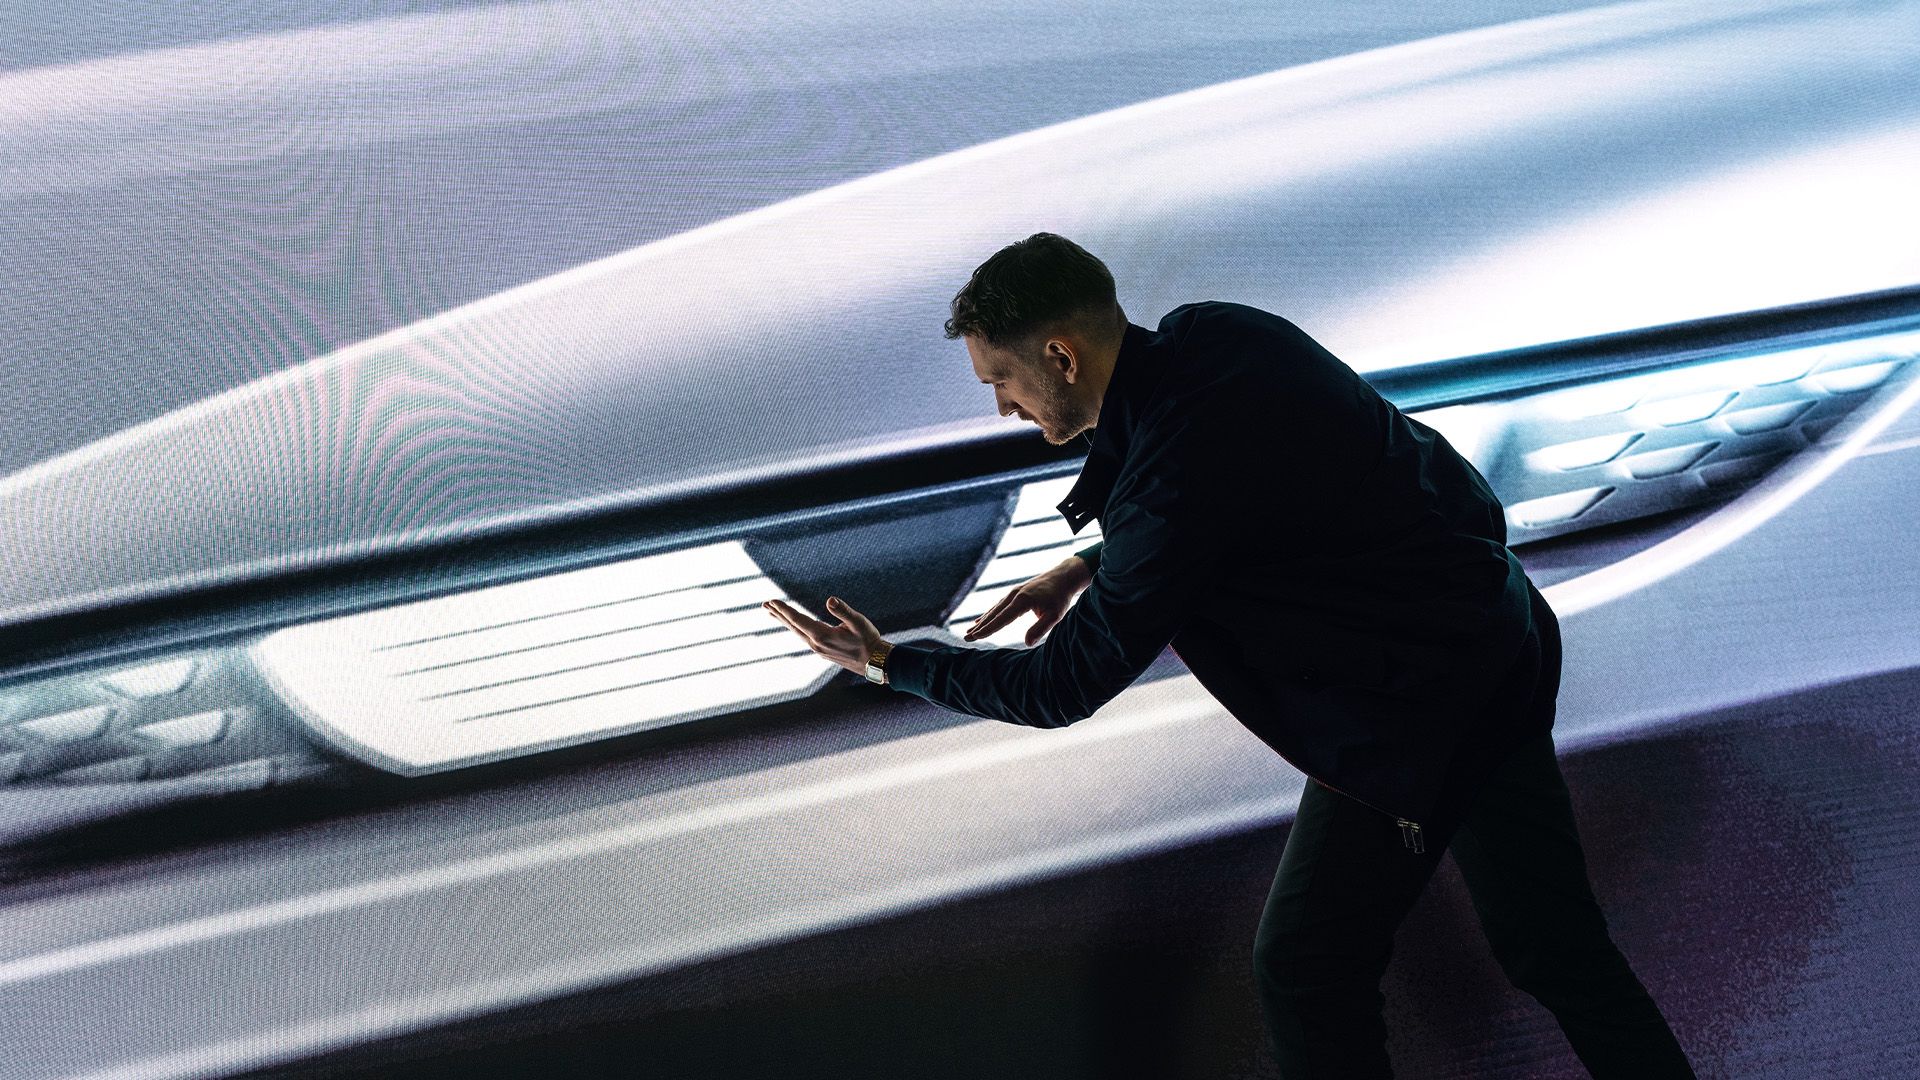 Il Designer Rittwage presenta gli Audi Eyes sullo schermo.